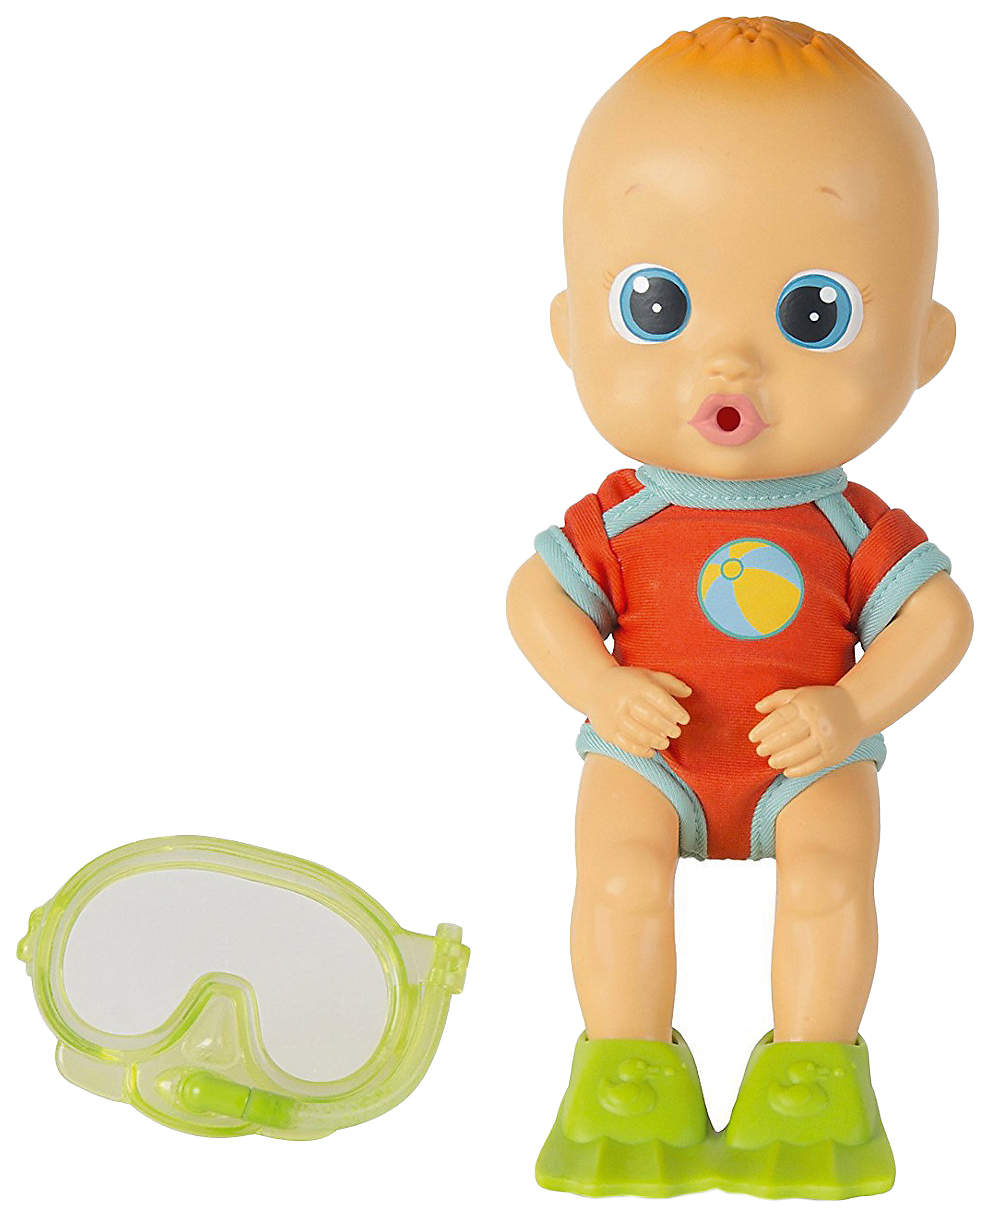 Кукла для купания Bloopies - Коби, в открытой коробке, 24 см IMC toys кукла для купания bloopies свити в открытой коробке 24 см imc toys